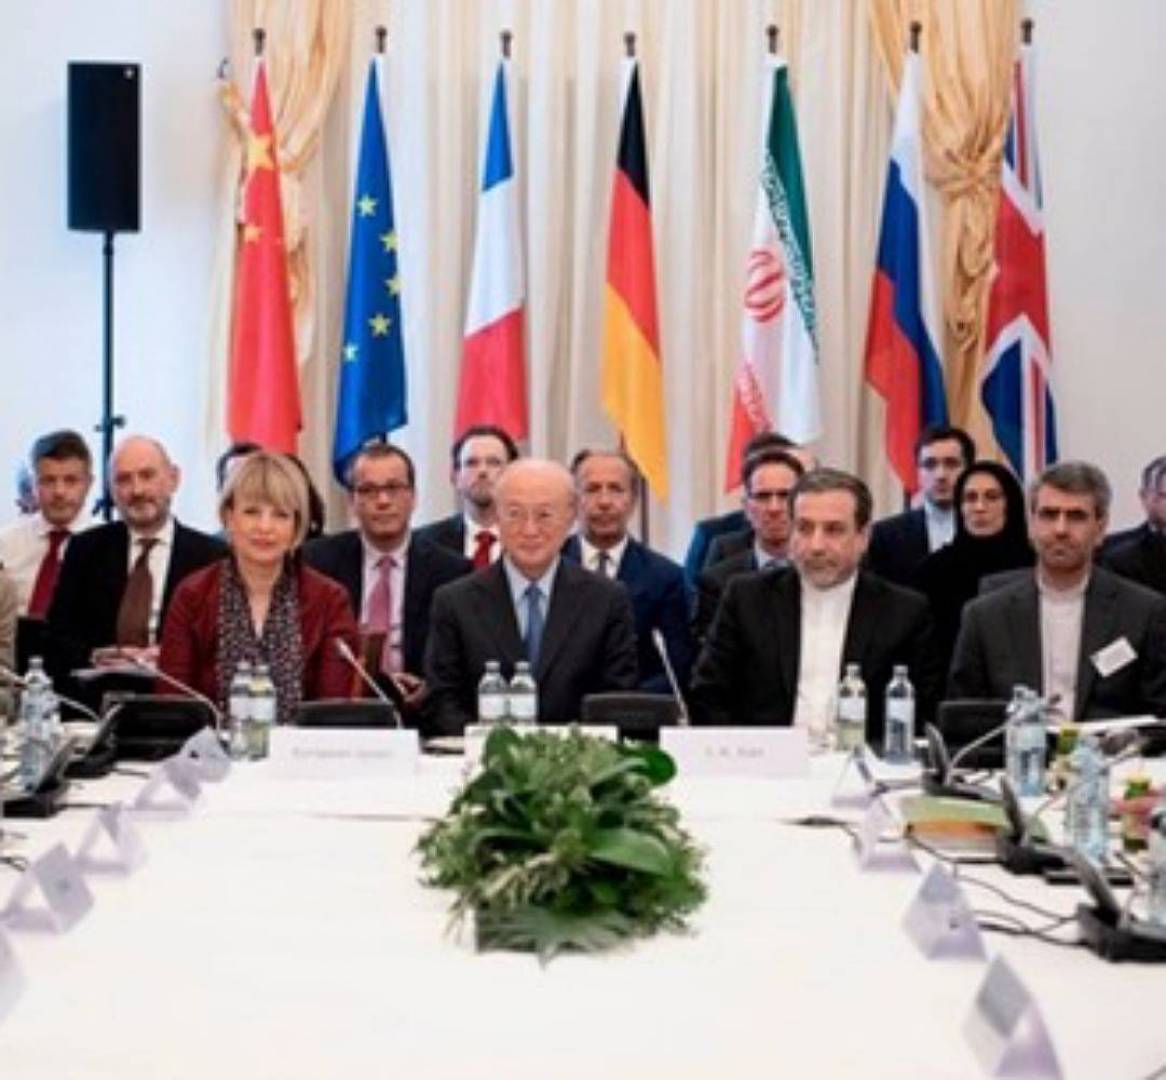 انتهاء جولة المفاوضات بين إيران ودول 5+1....وأوروبا تقدم نصا نهائيا للاتفاق النووي الإيراني...ماذا جاء فيه